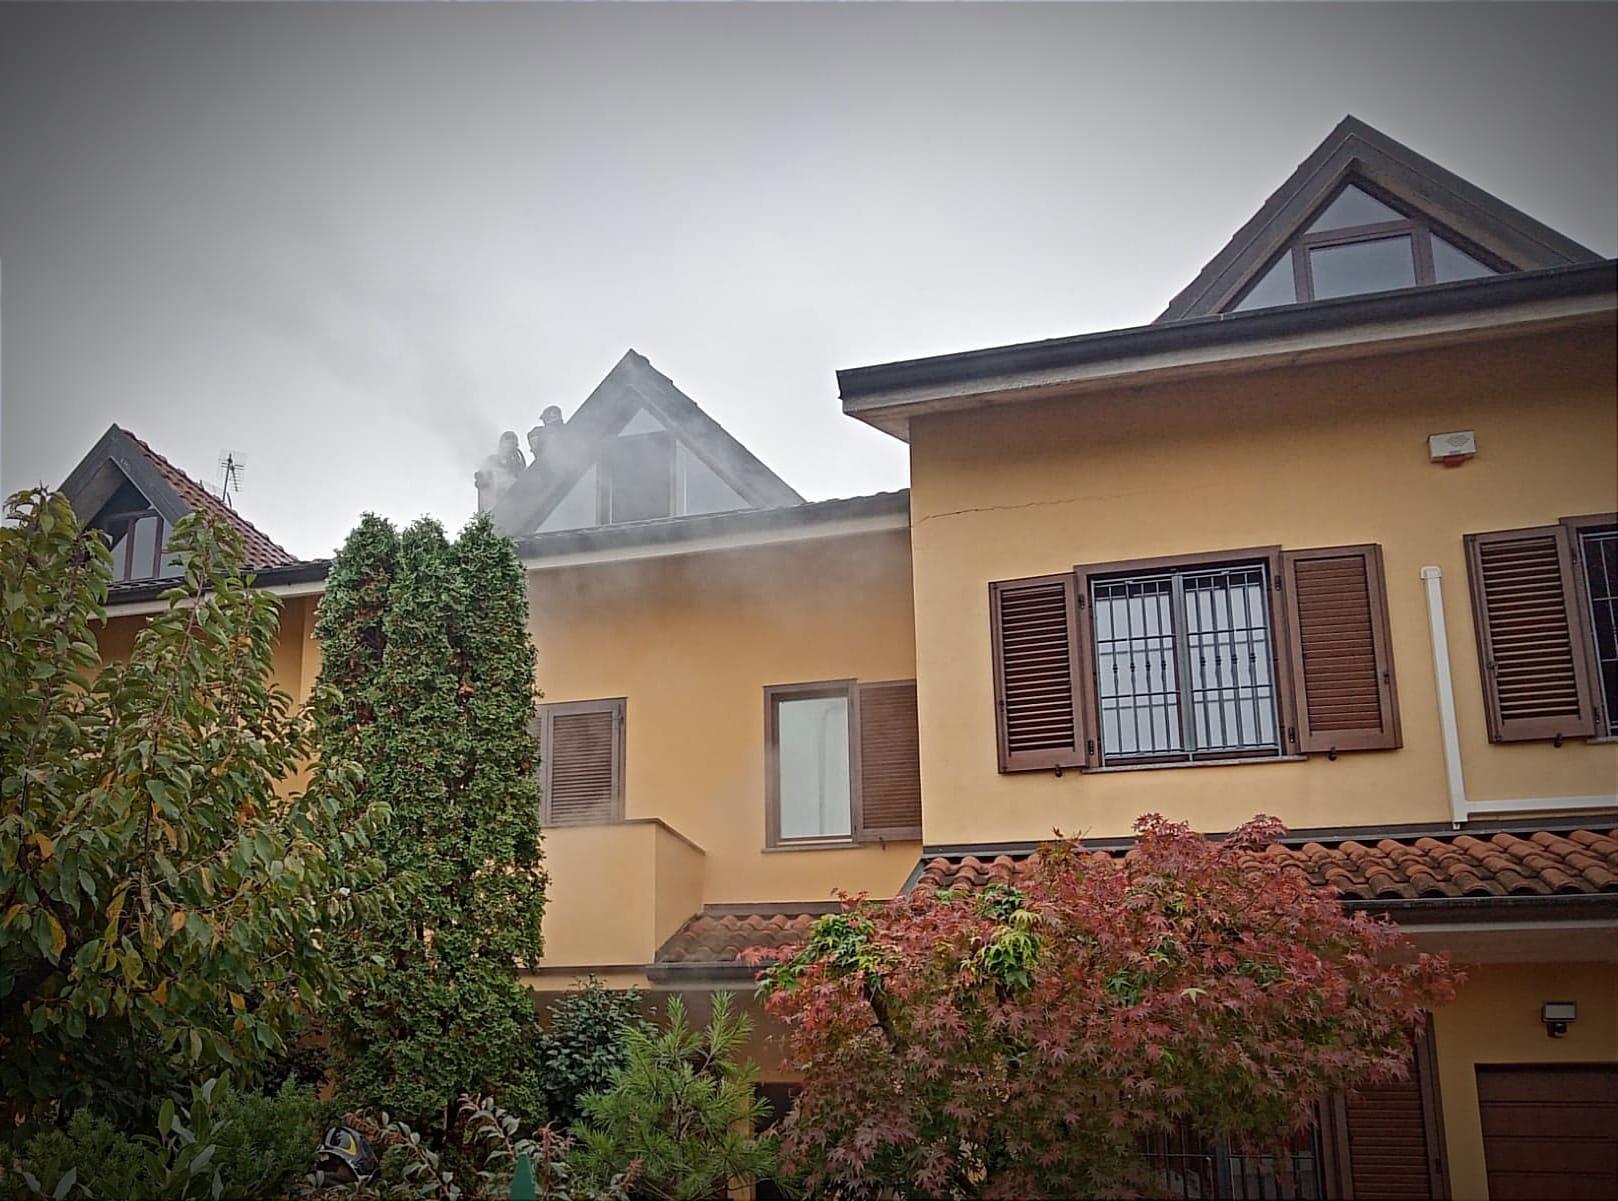 Comignolo in fiamme: i vicini danno l’allarme. I pompieri “salvano” il tetto